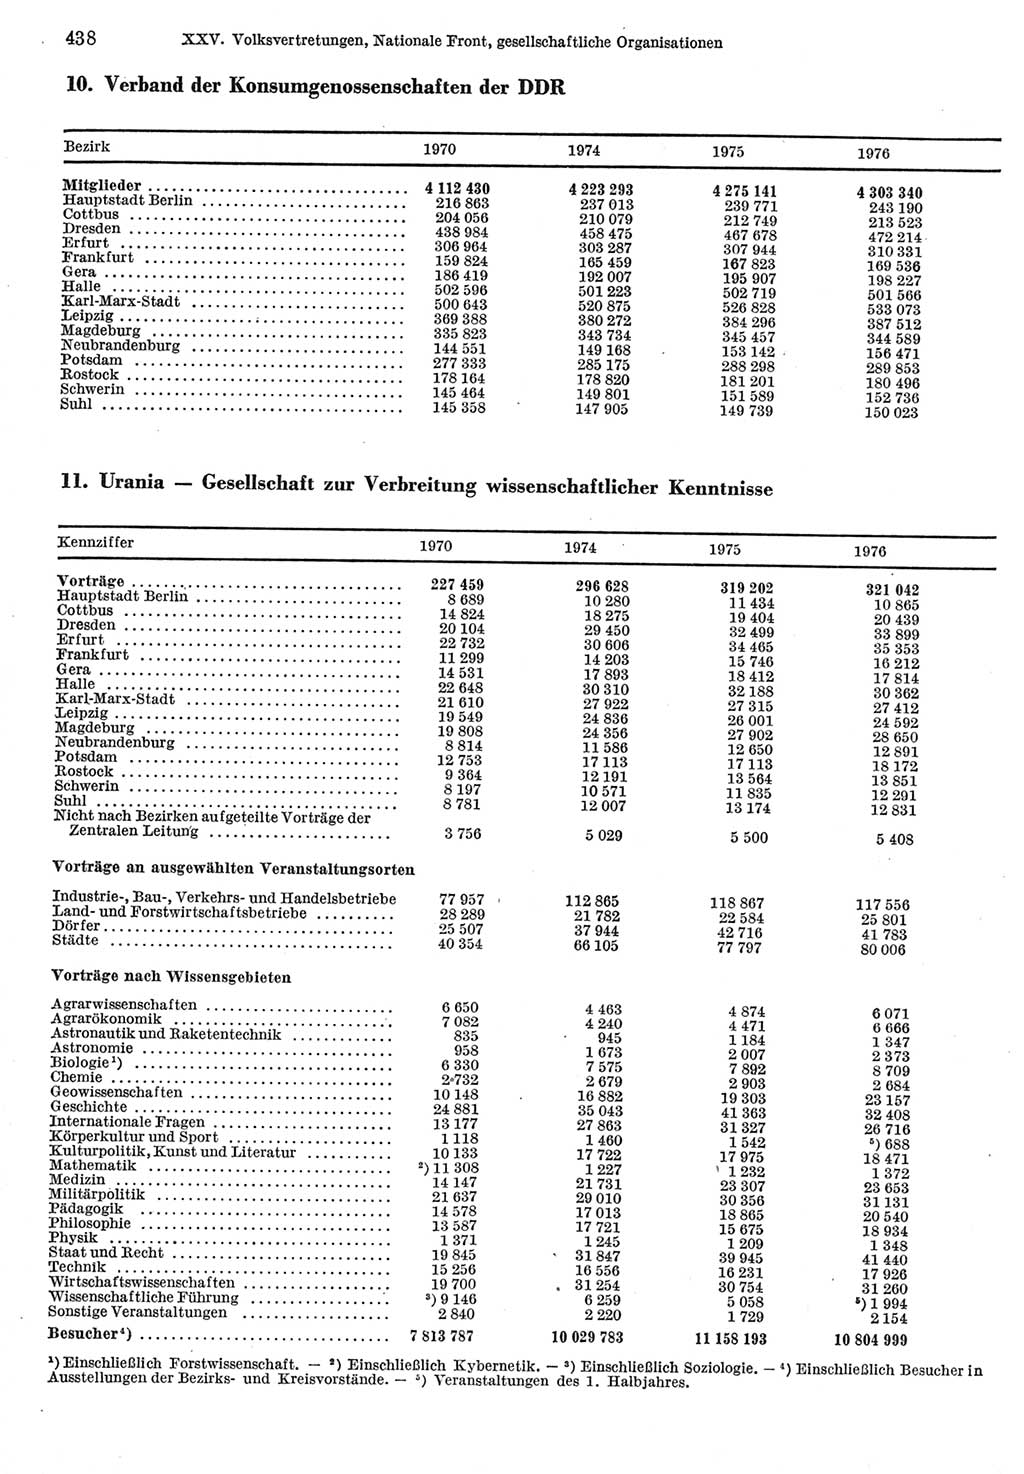 Statistisches Jahrbuch der Deutschen Demokratischen Republik (DDR) 1977, Seite 438 (Stat. Jb. DDR 1977, S. 438)